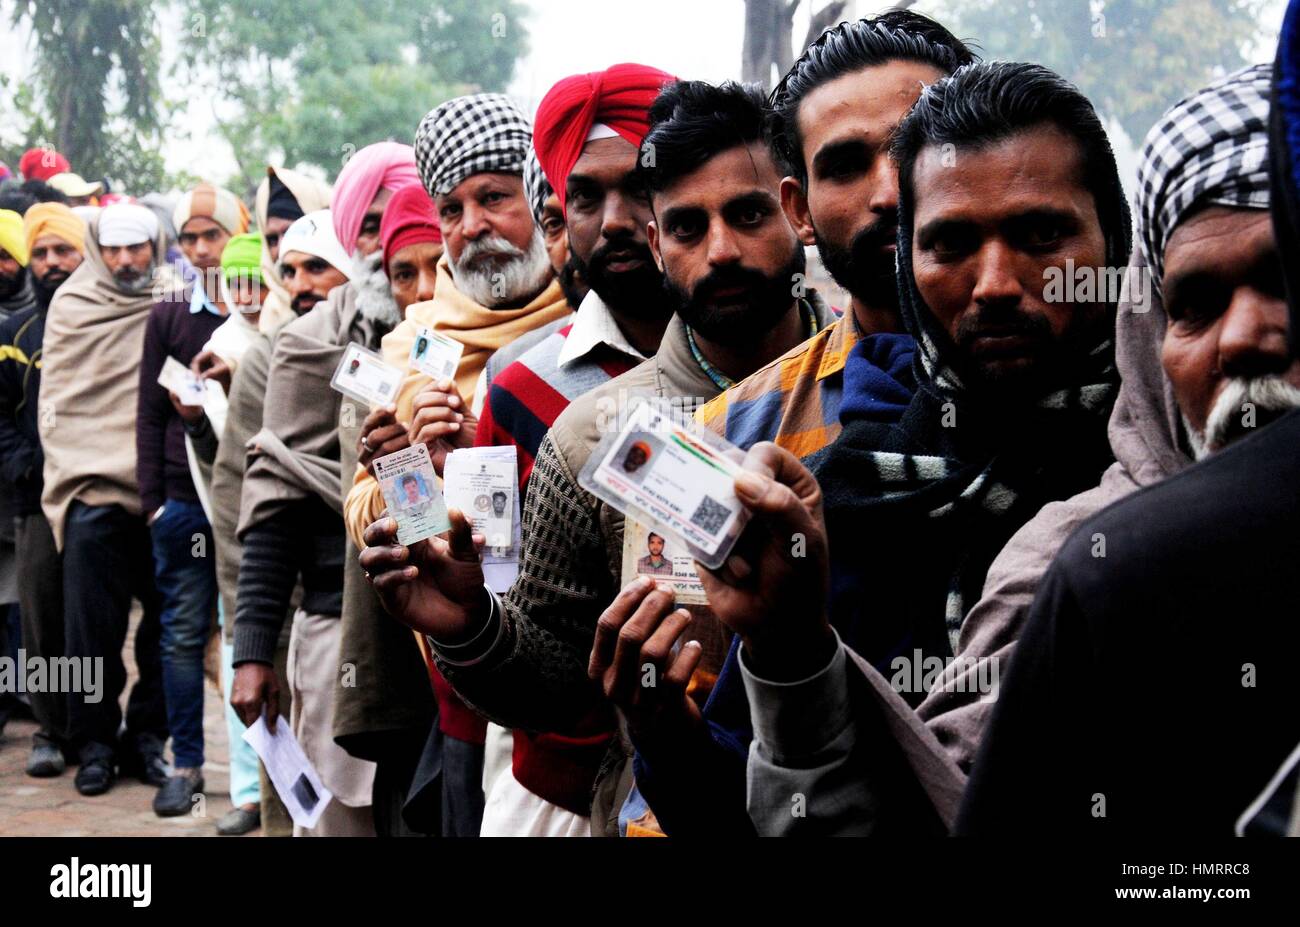 Amritsar, Indien. 5. Februar 2017. Indische Wähler zeigen ihre Ausweise außerhalb einer Wahlkabine für Versammlung Wahl in einem Dorf etwa 25 km von Amritsar, nördlichen indischen Bundesstaat Punjab, 4. Februar 2017. Zwei indische Bundesstaaten Punjab im Norden und Goa im Westen, beide regiert des Landes regieren Bharatiya Janata Party (BJP), ging nach Umfragen am Samstag. Bildnachweis: Xinhua/Alamy Live-Nachrichten Stockfoto